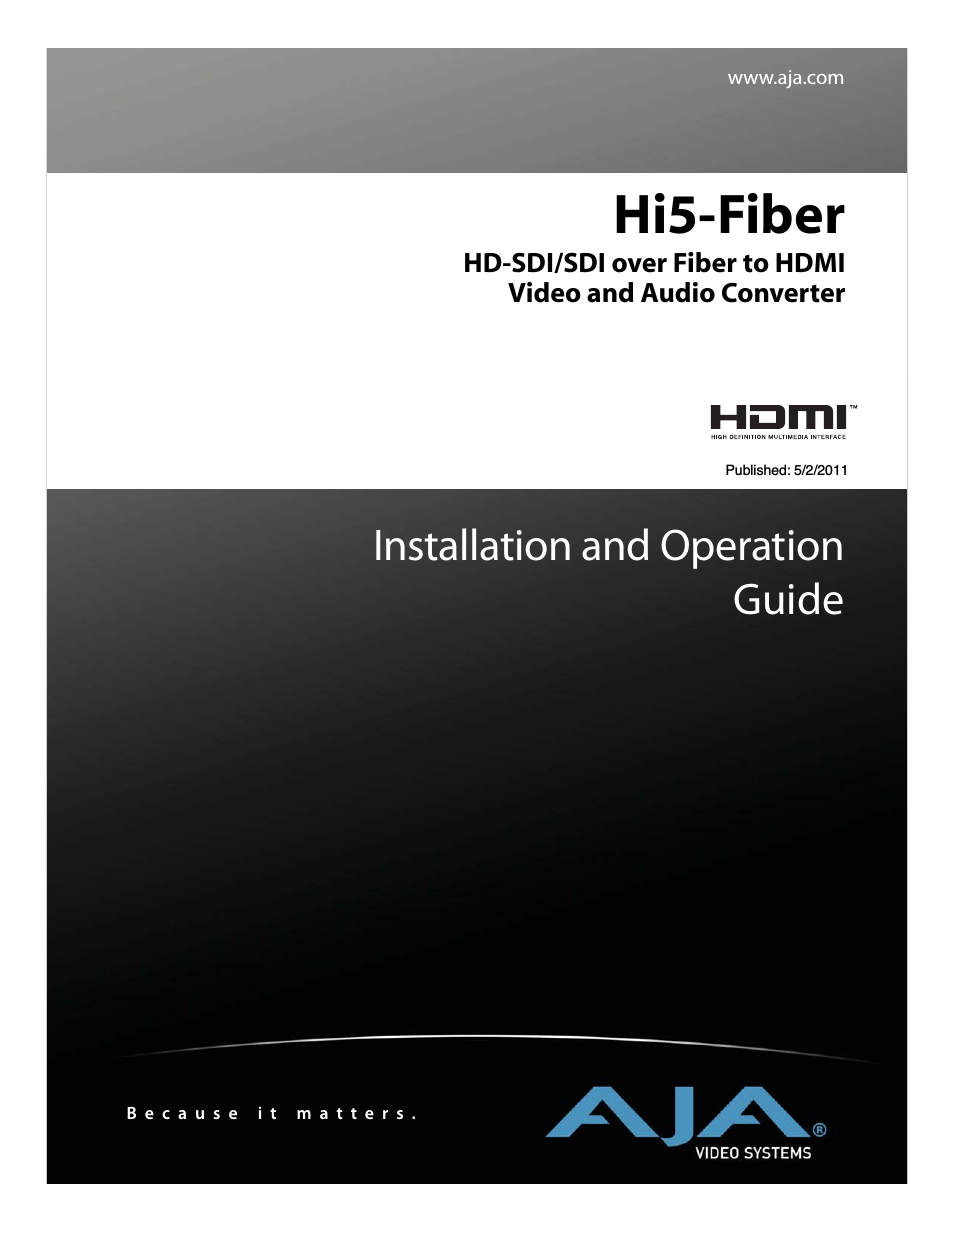 Hi5-Fiber